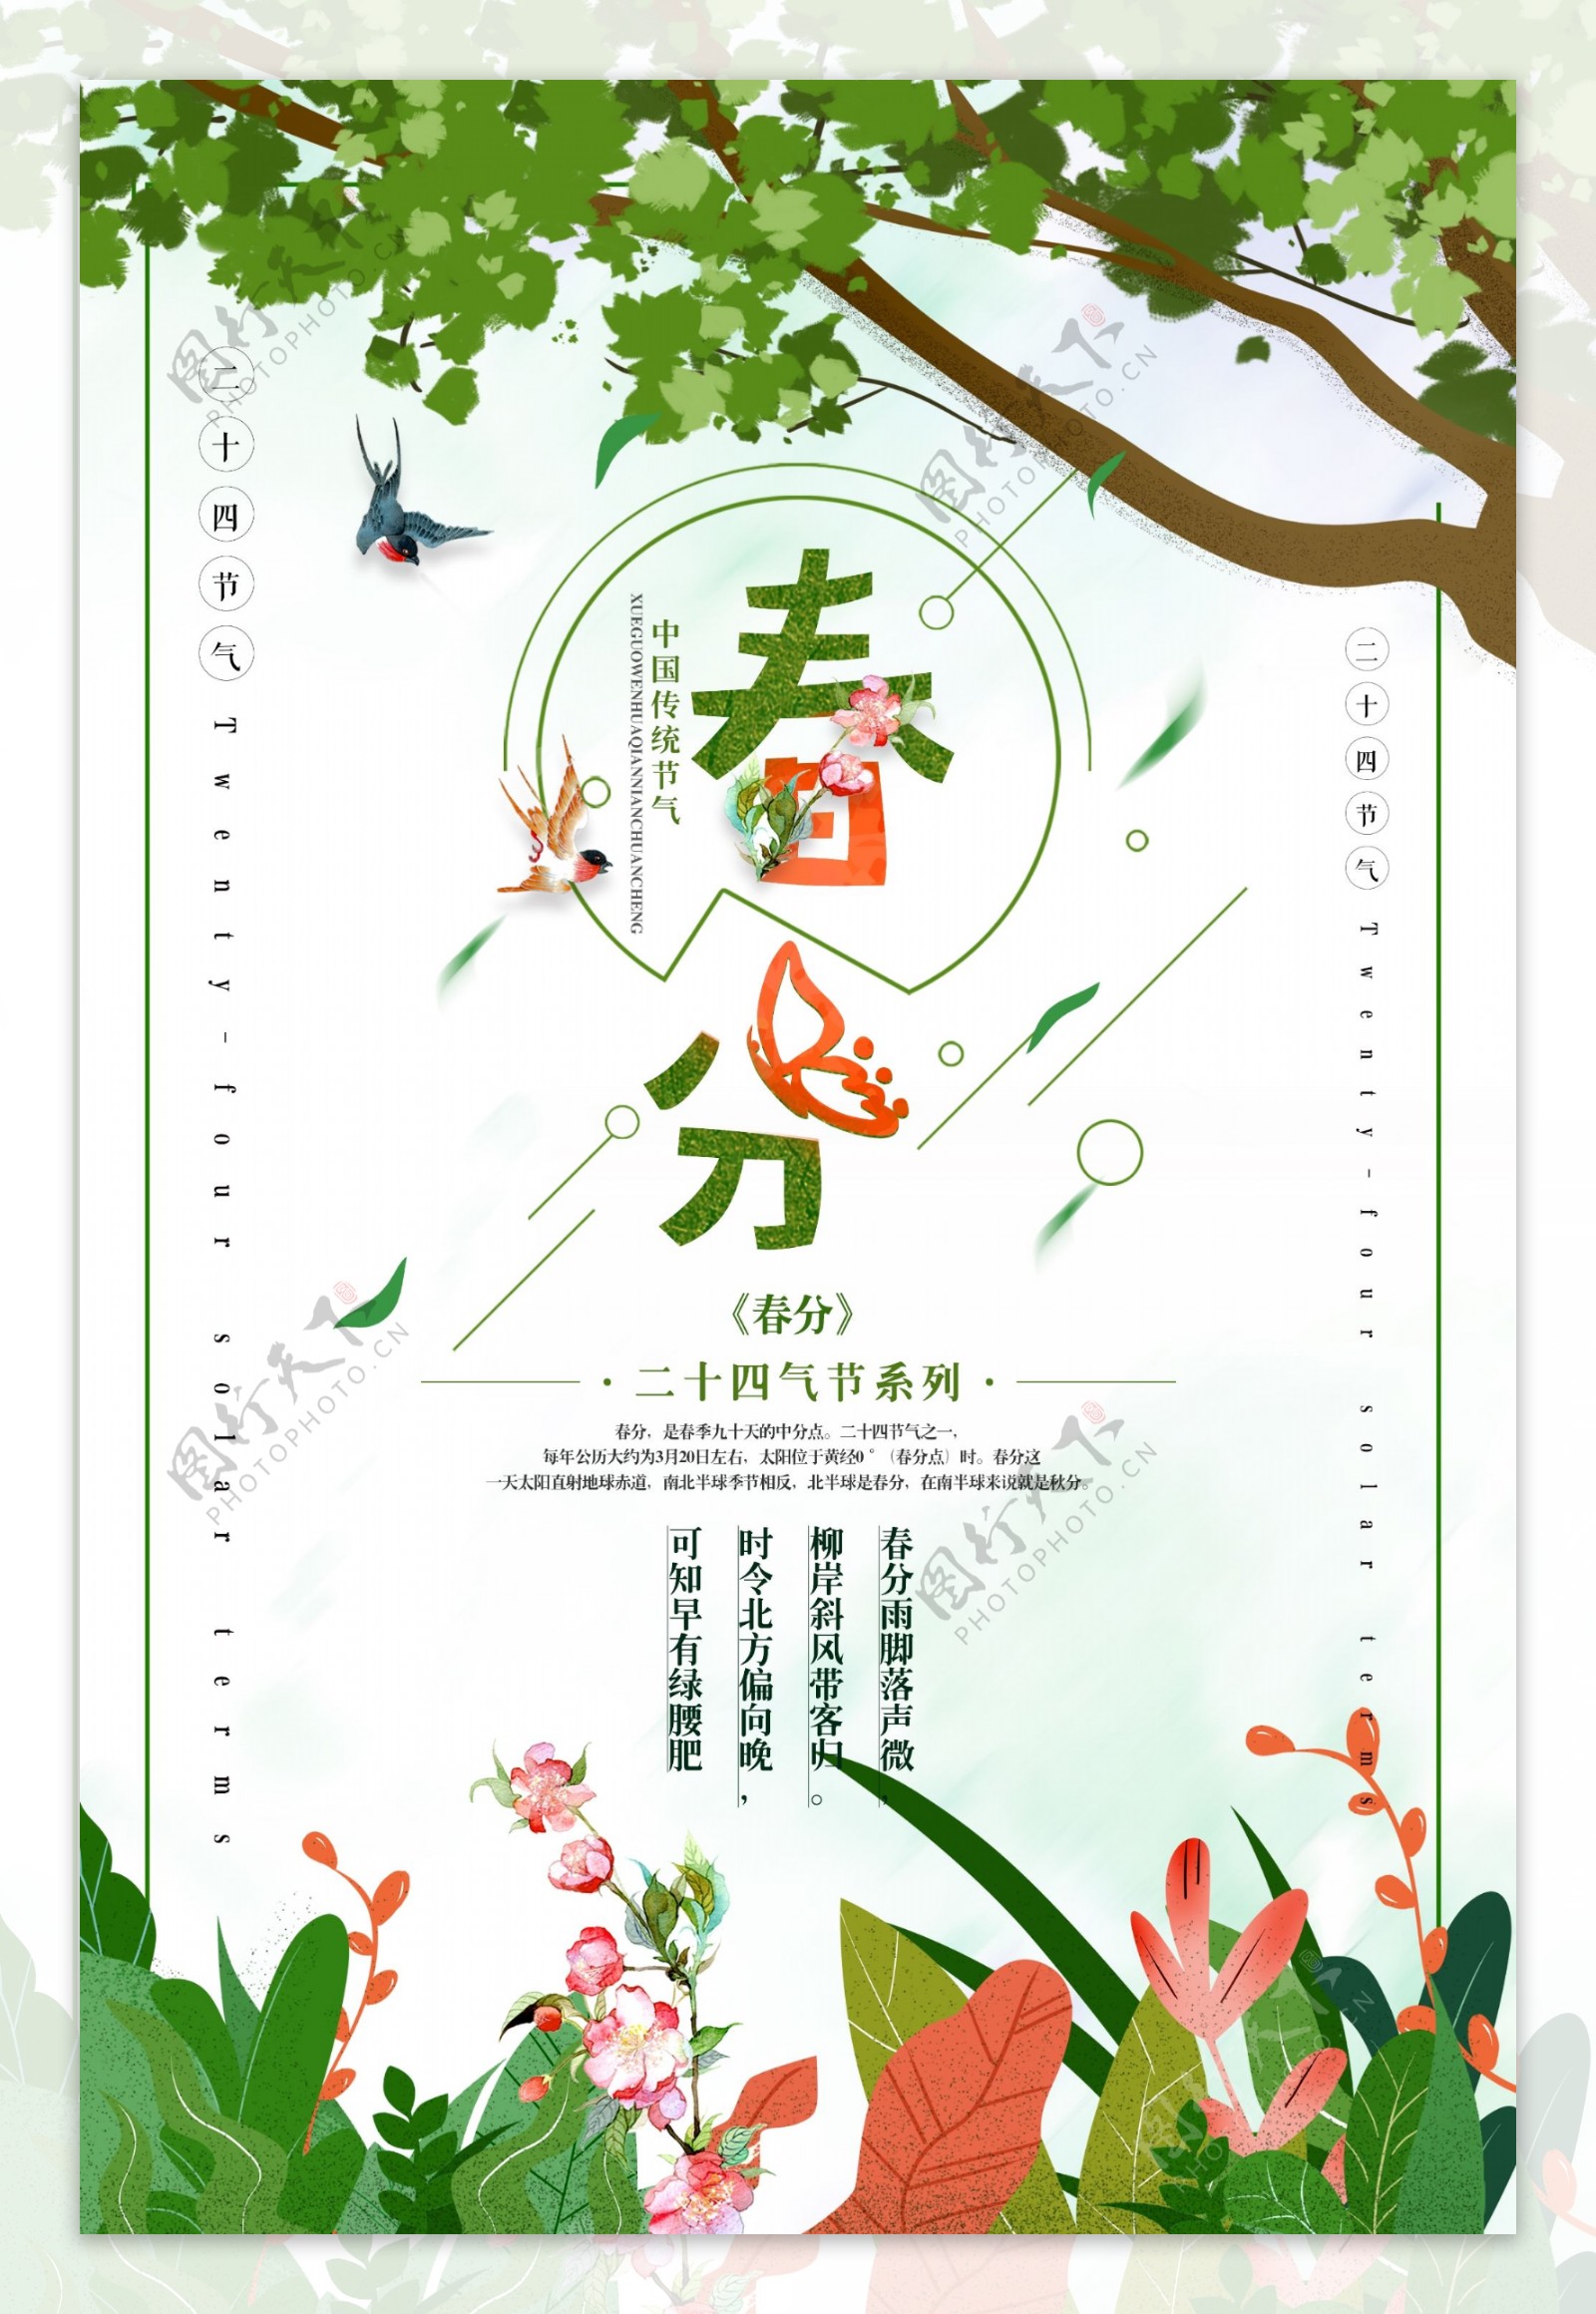 小清新春分海报背景设计